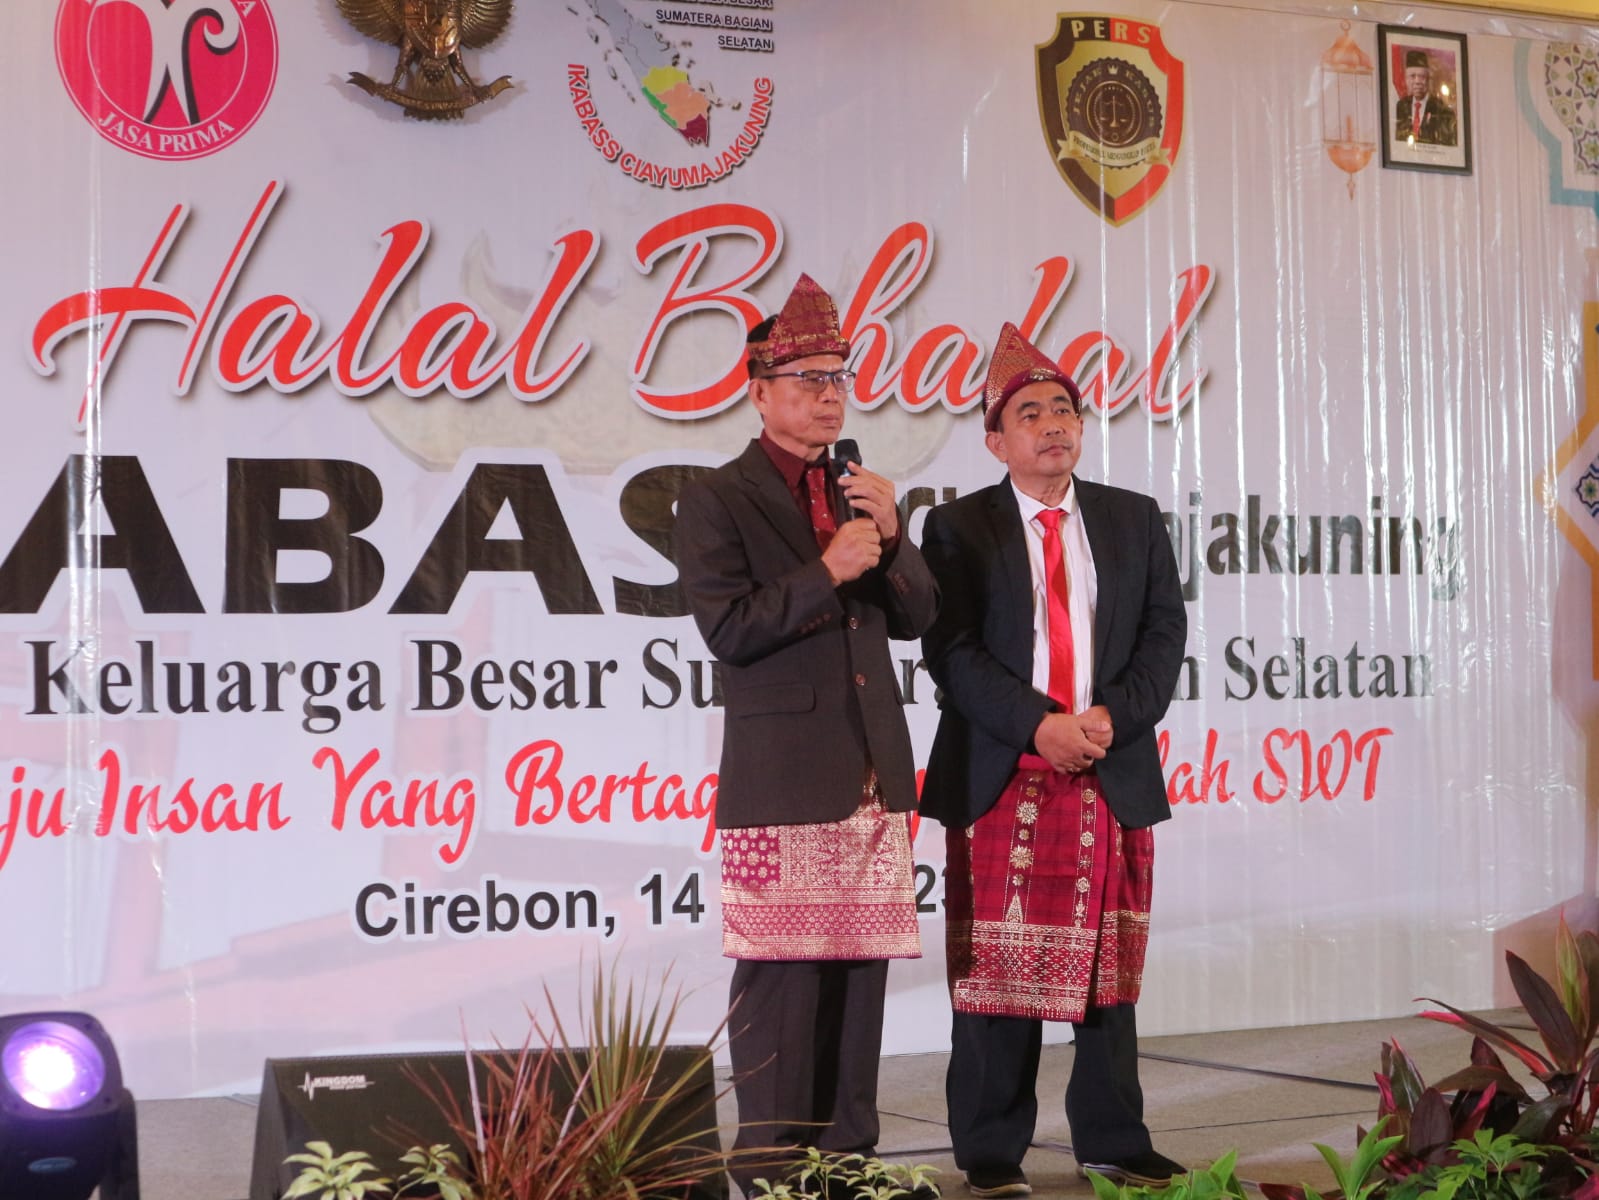 Halal Bihalal IKABASS Ciayumajakuning, Warga Sumatera Selatan Kompak di Perantauan